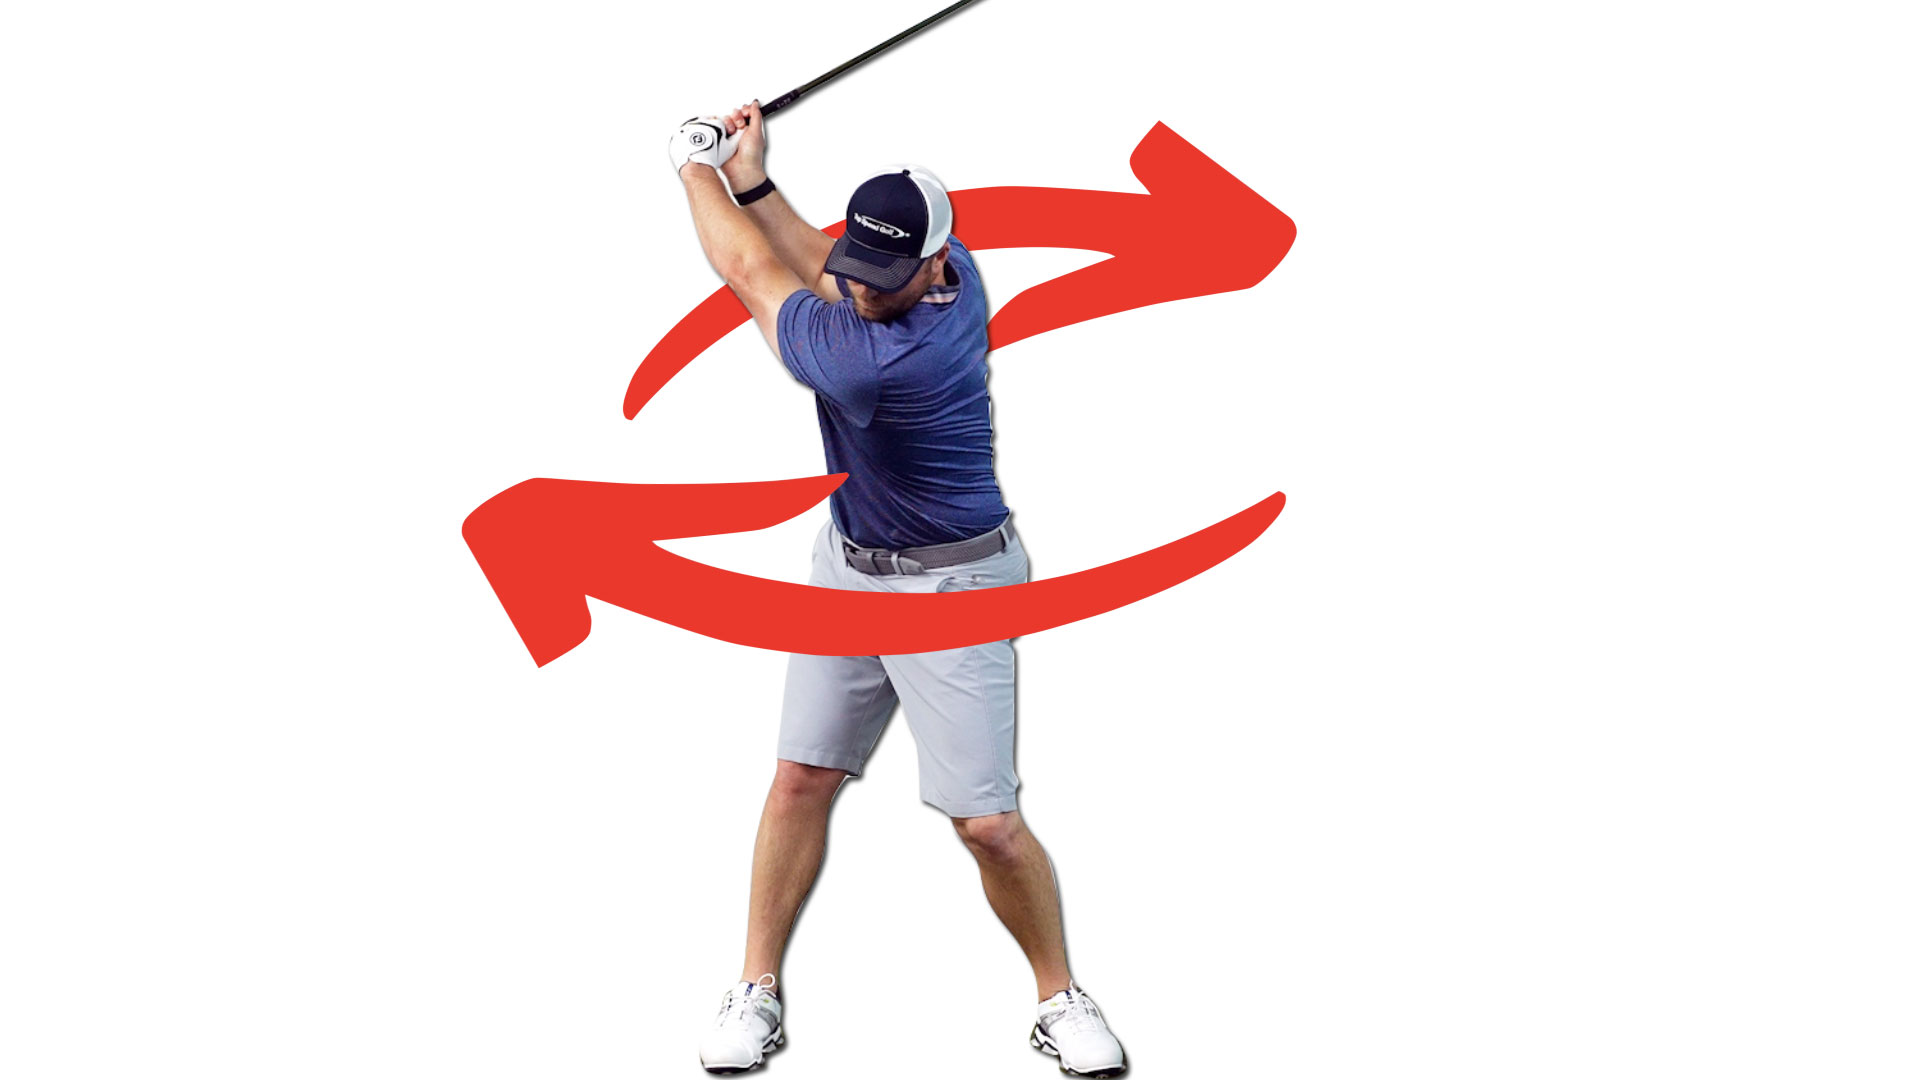 https://topspeedgolf.com/wp-content/uploads/The-Best-Golf-Rotation-Drill-The-90-90-Golf-Stretch.jpg